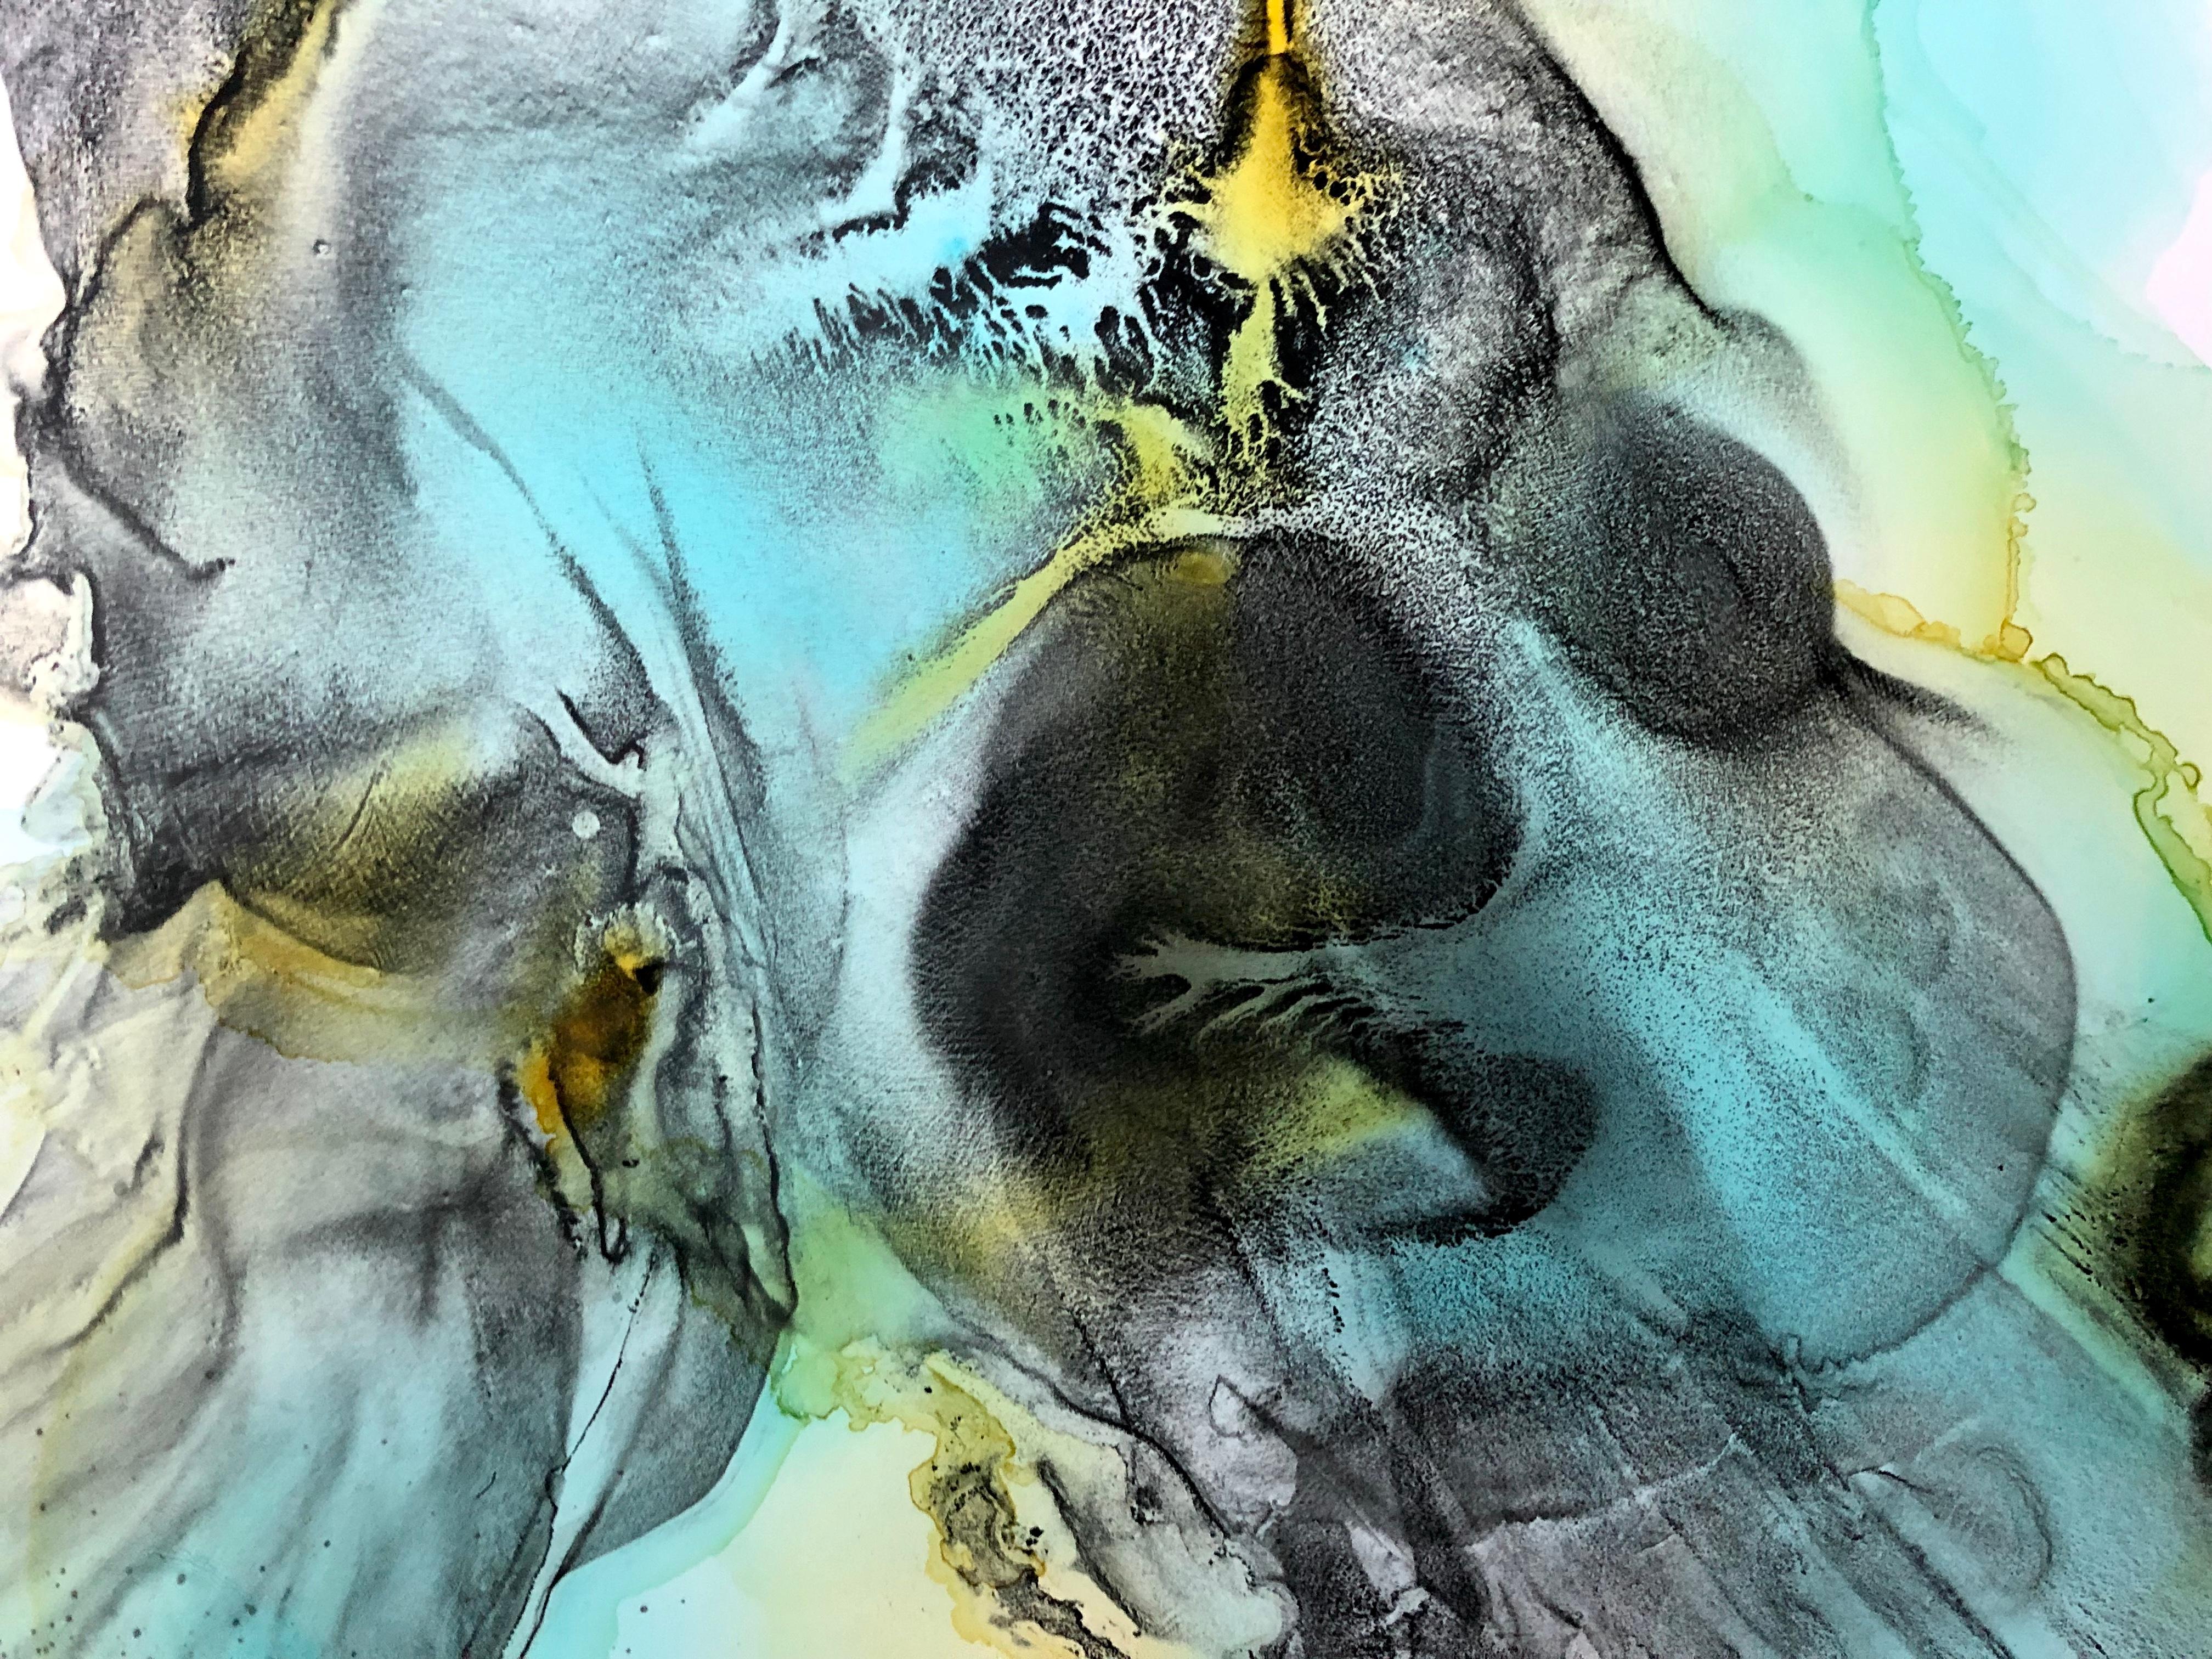 Hawaii-Armband - abstraktes Gemälde in Türkisblau, Gelb, Schwarz (Abstrakter Expressionismus), Painting, von Lena Cher